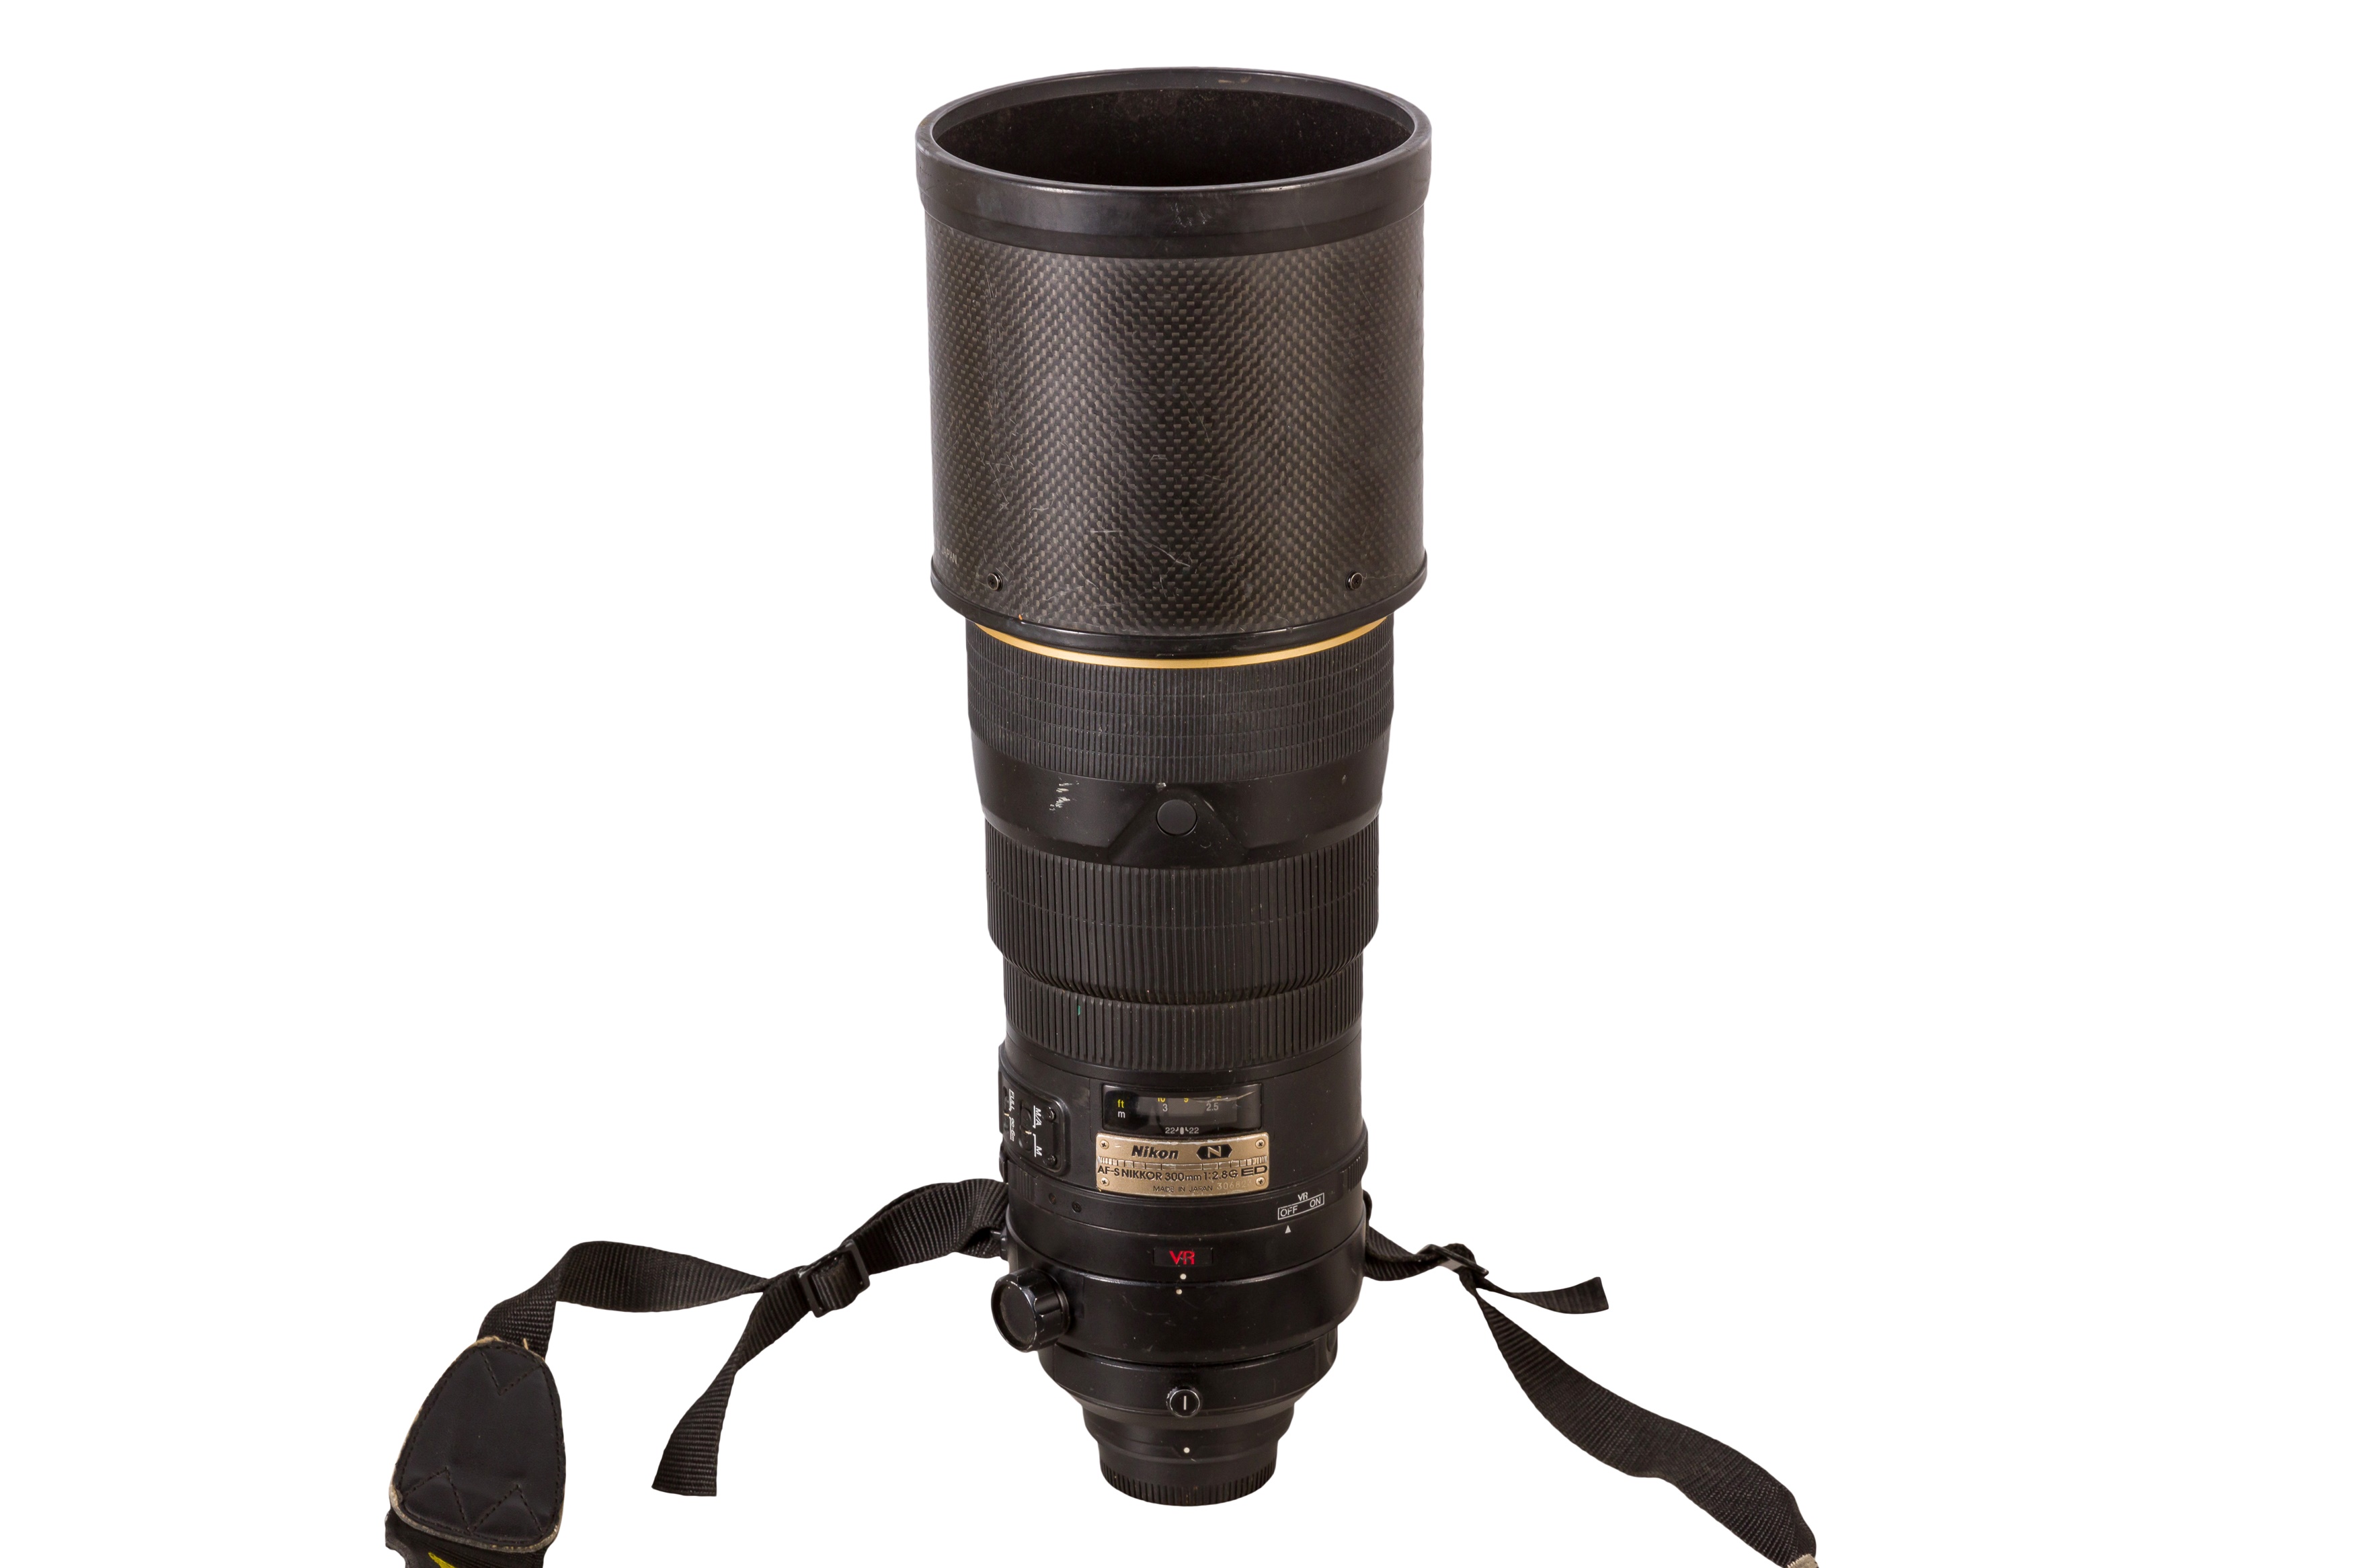 A Nikon N AF-S Nikkor G ED 300 mm f/2.8 Telephoto Prime Lens - Image 2 of 3